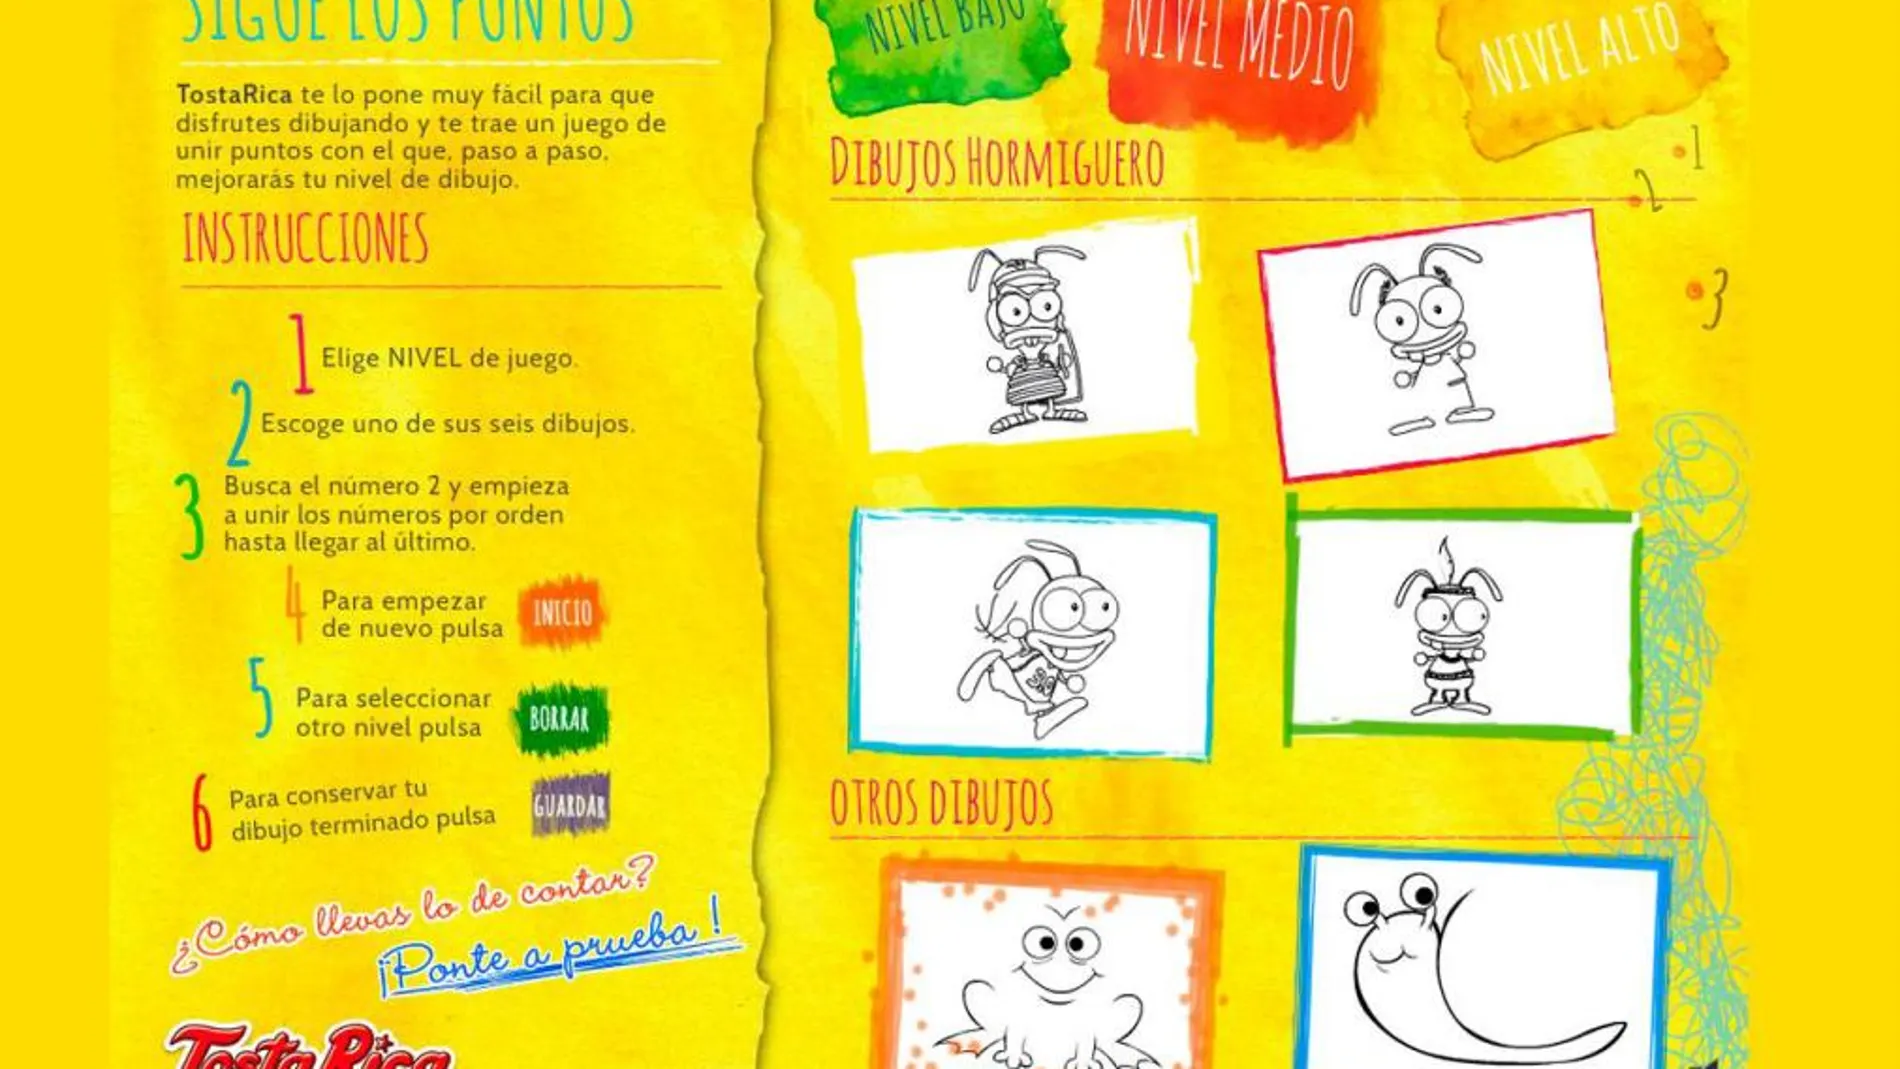 Sigue los puntos, una divertida app educativa para que los niños aprendan a contar y dibujar